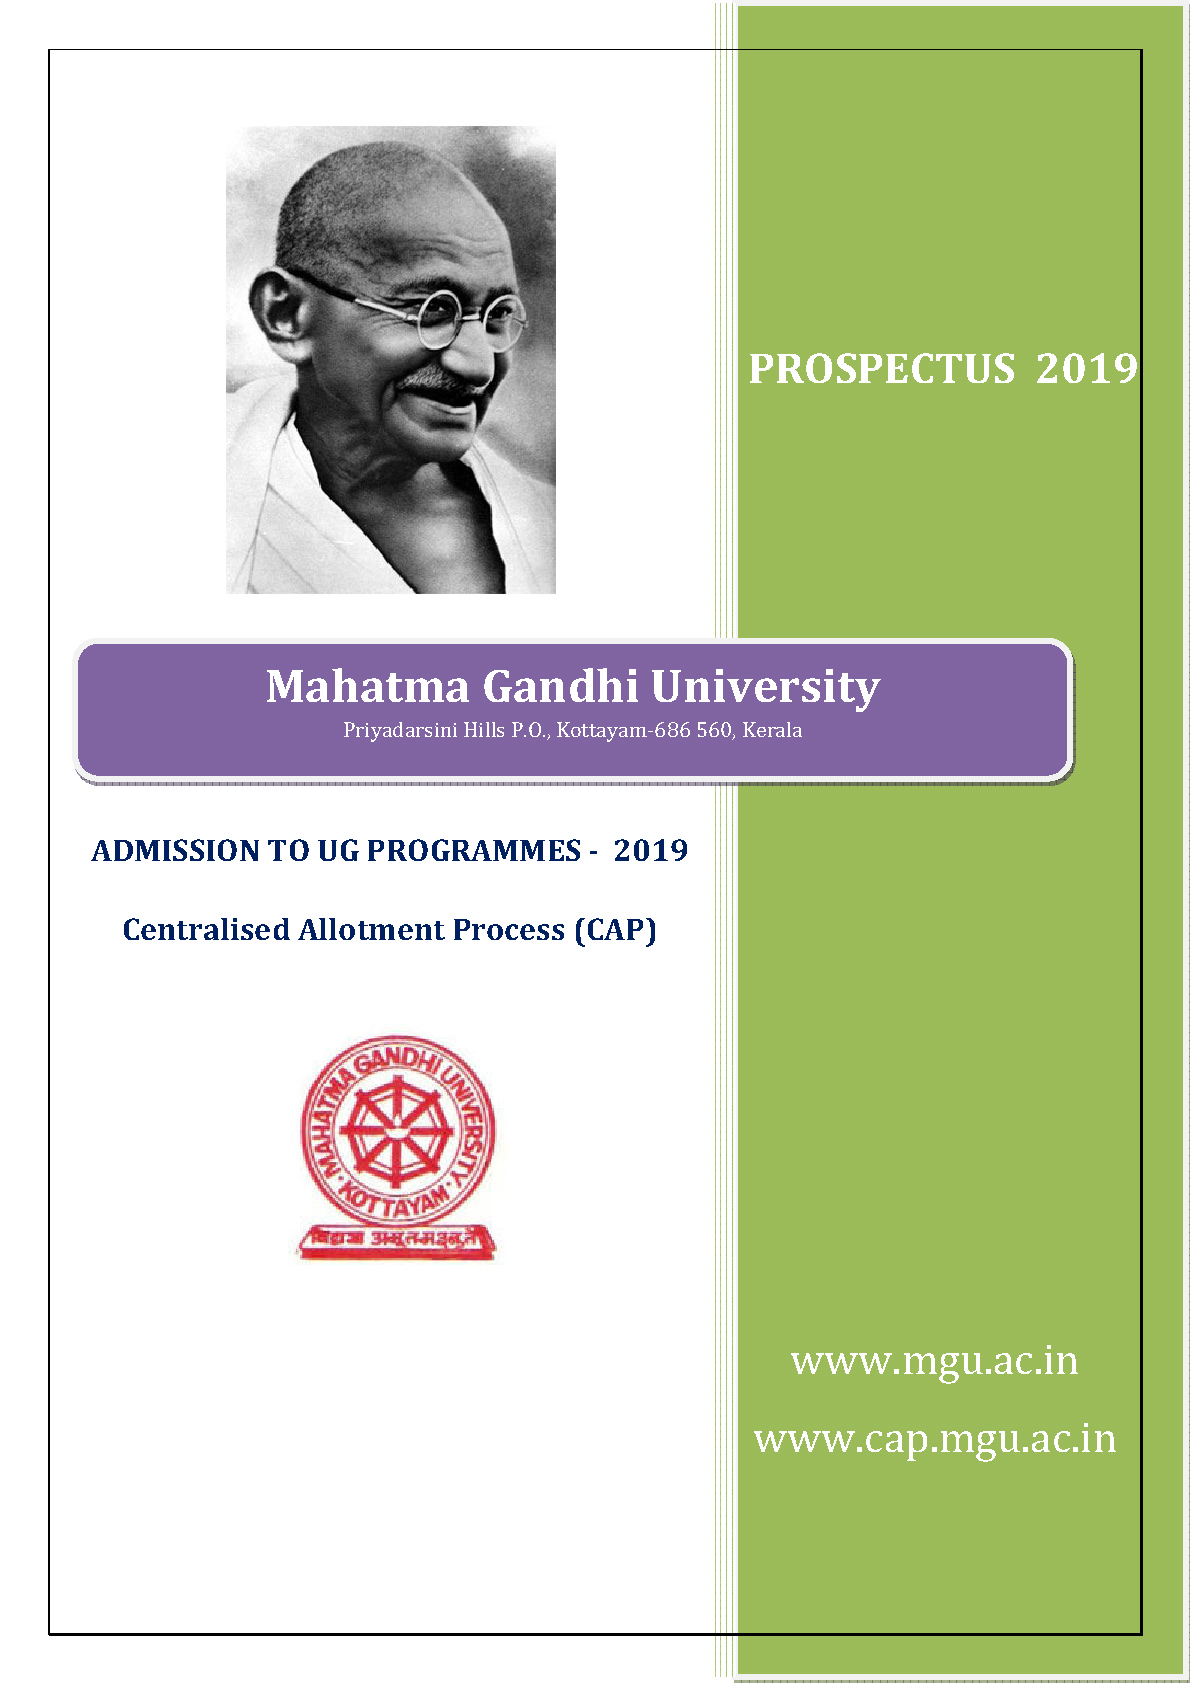 Mahatma Gandhi University Kerala UG Admission 2019 - Notification Image 1